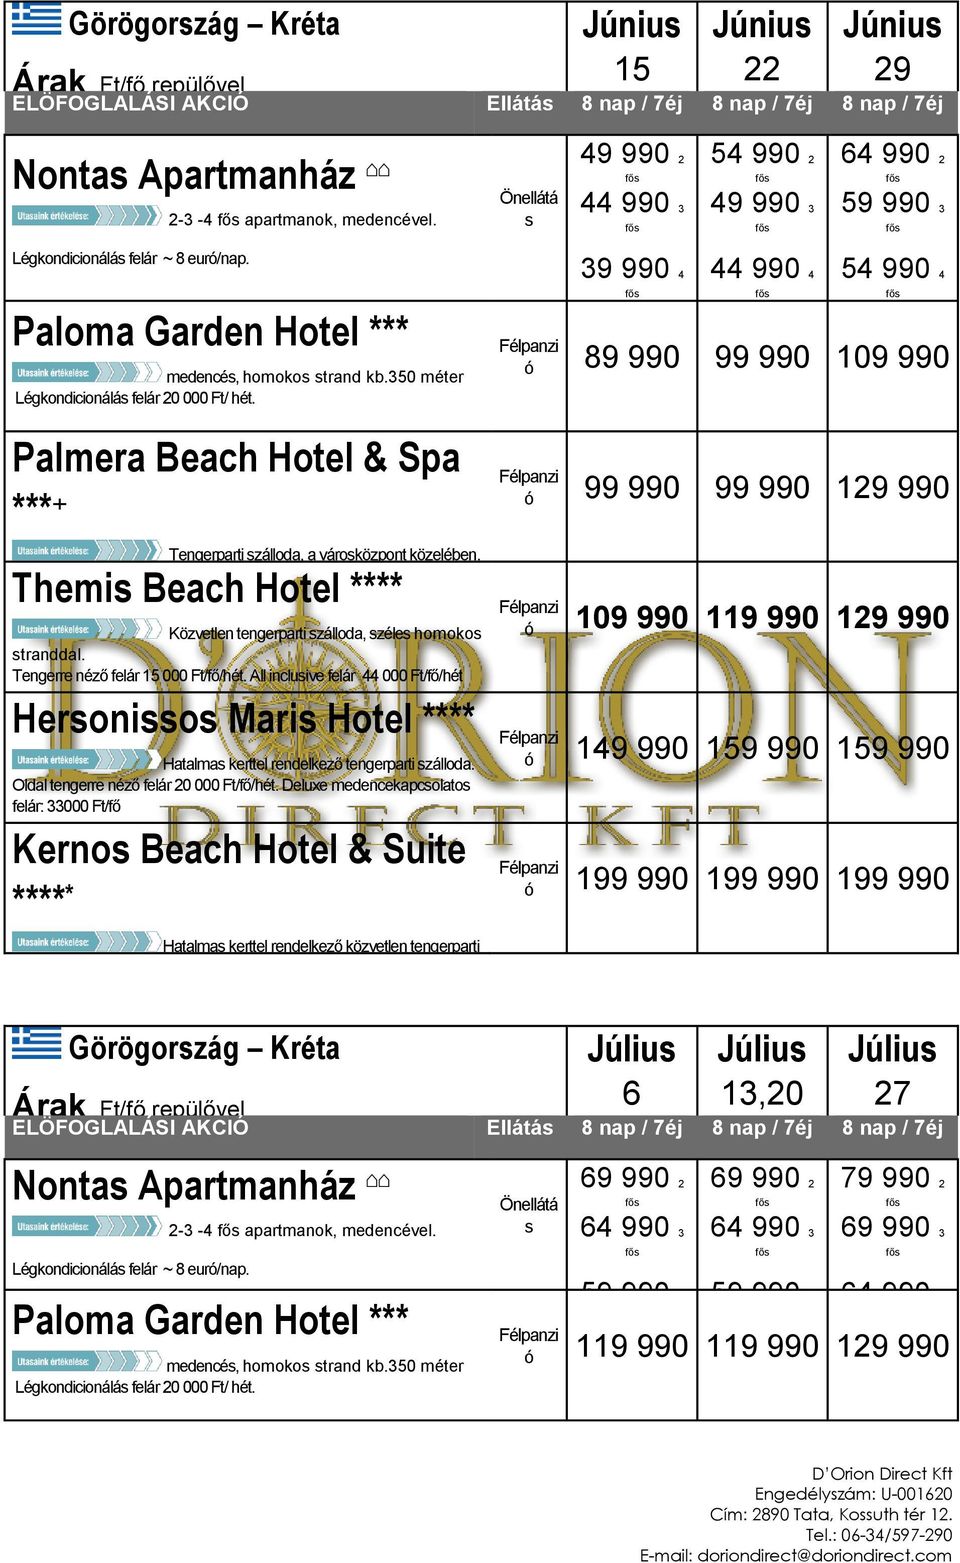 Palmera Beach Hotel & Spa *** + Tengerparti zálloda, a vároközpont közelében. Tengerre néző felár 20 000 Légkondicionálá felár ~8 euró/nap.